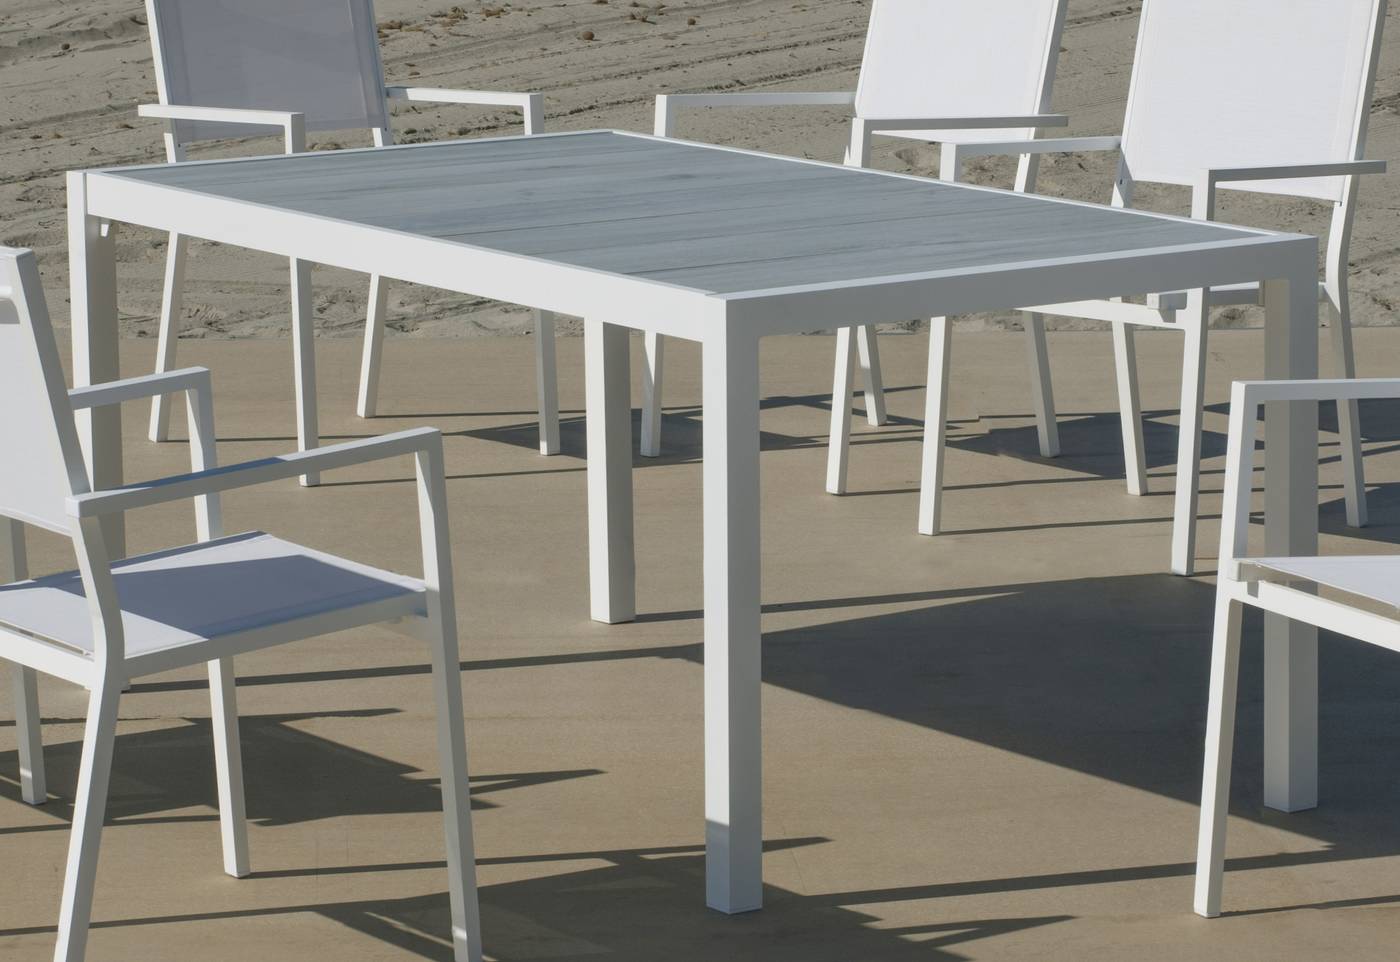 Set Palermo-160-4 Janeiro - Conjunto de aluminio para jardín: Mesa rectangular con tablero cerámico de 160 cm + 4 sillones altos de textilen. Colores: blanco y antracita.